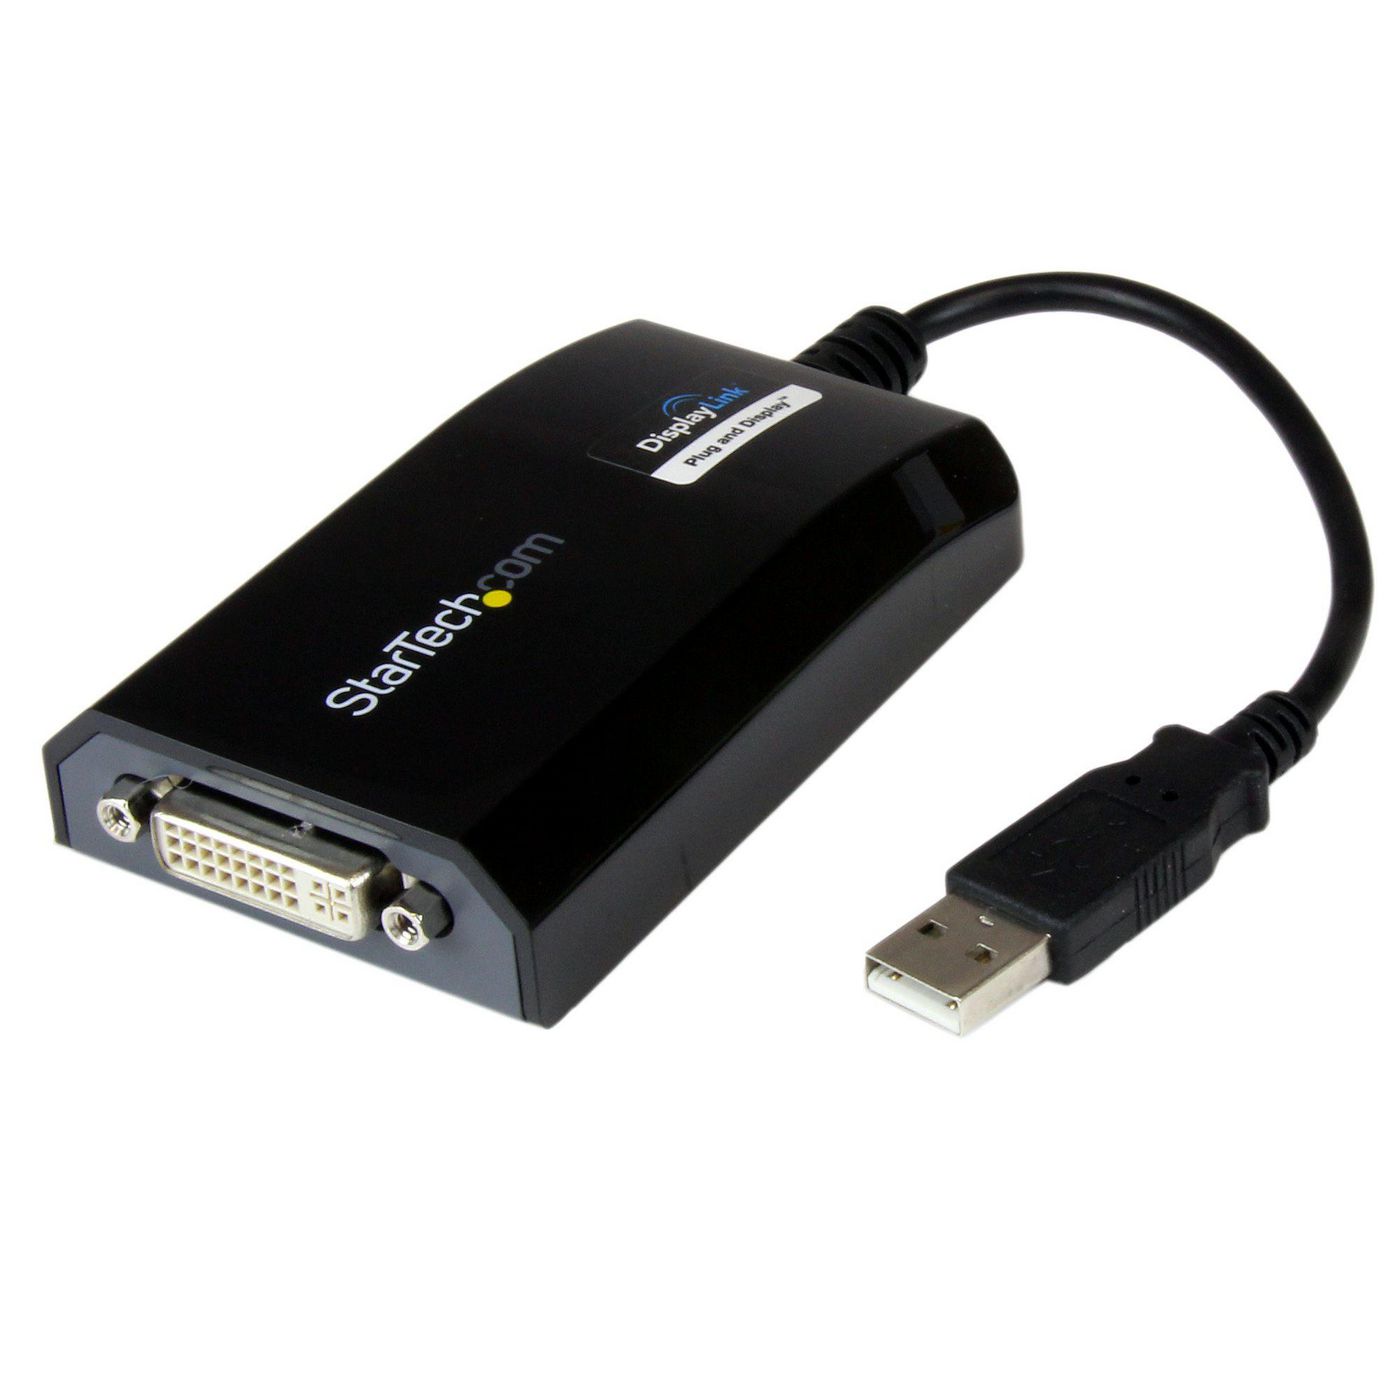 StarTechcom USB2DVIPRO2 USB TO DVI ADAPTER CARD 